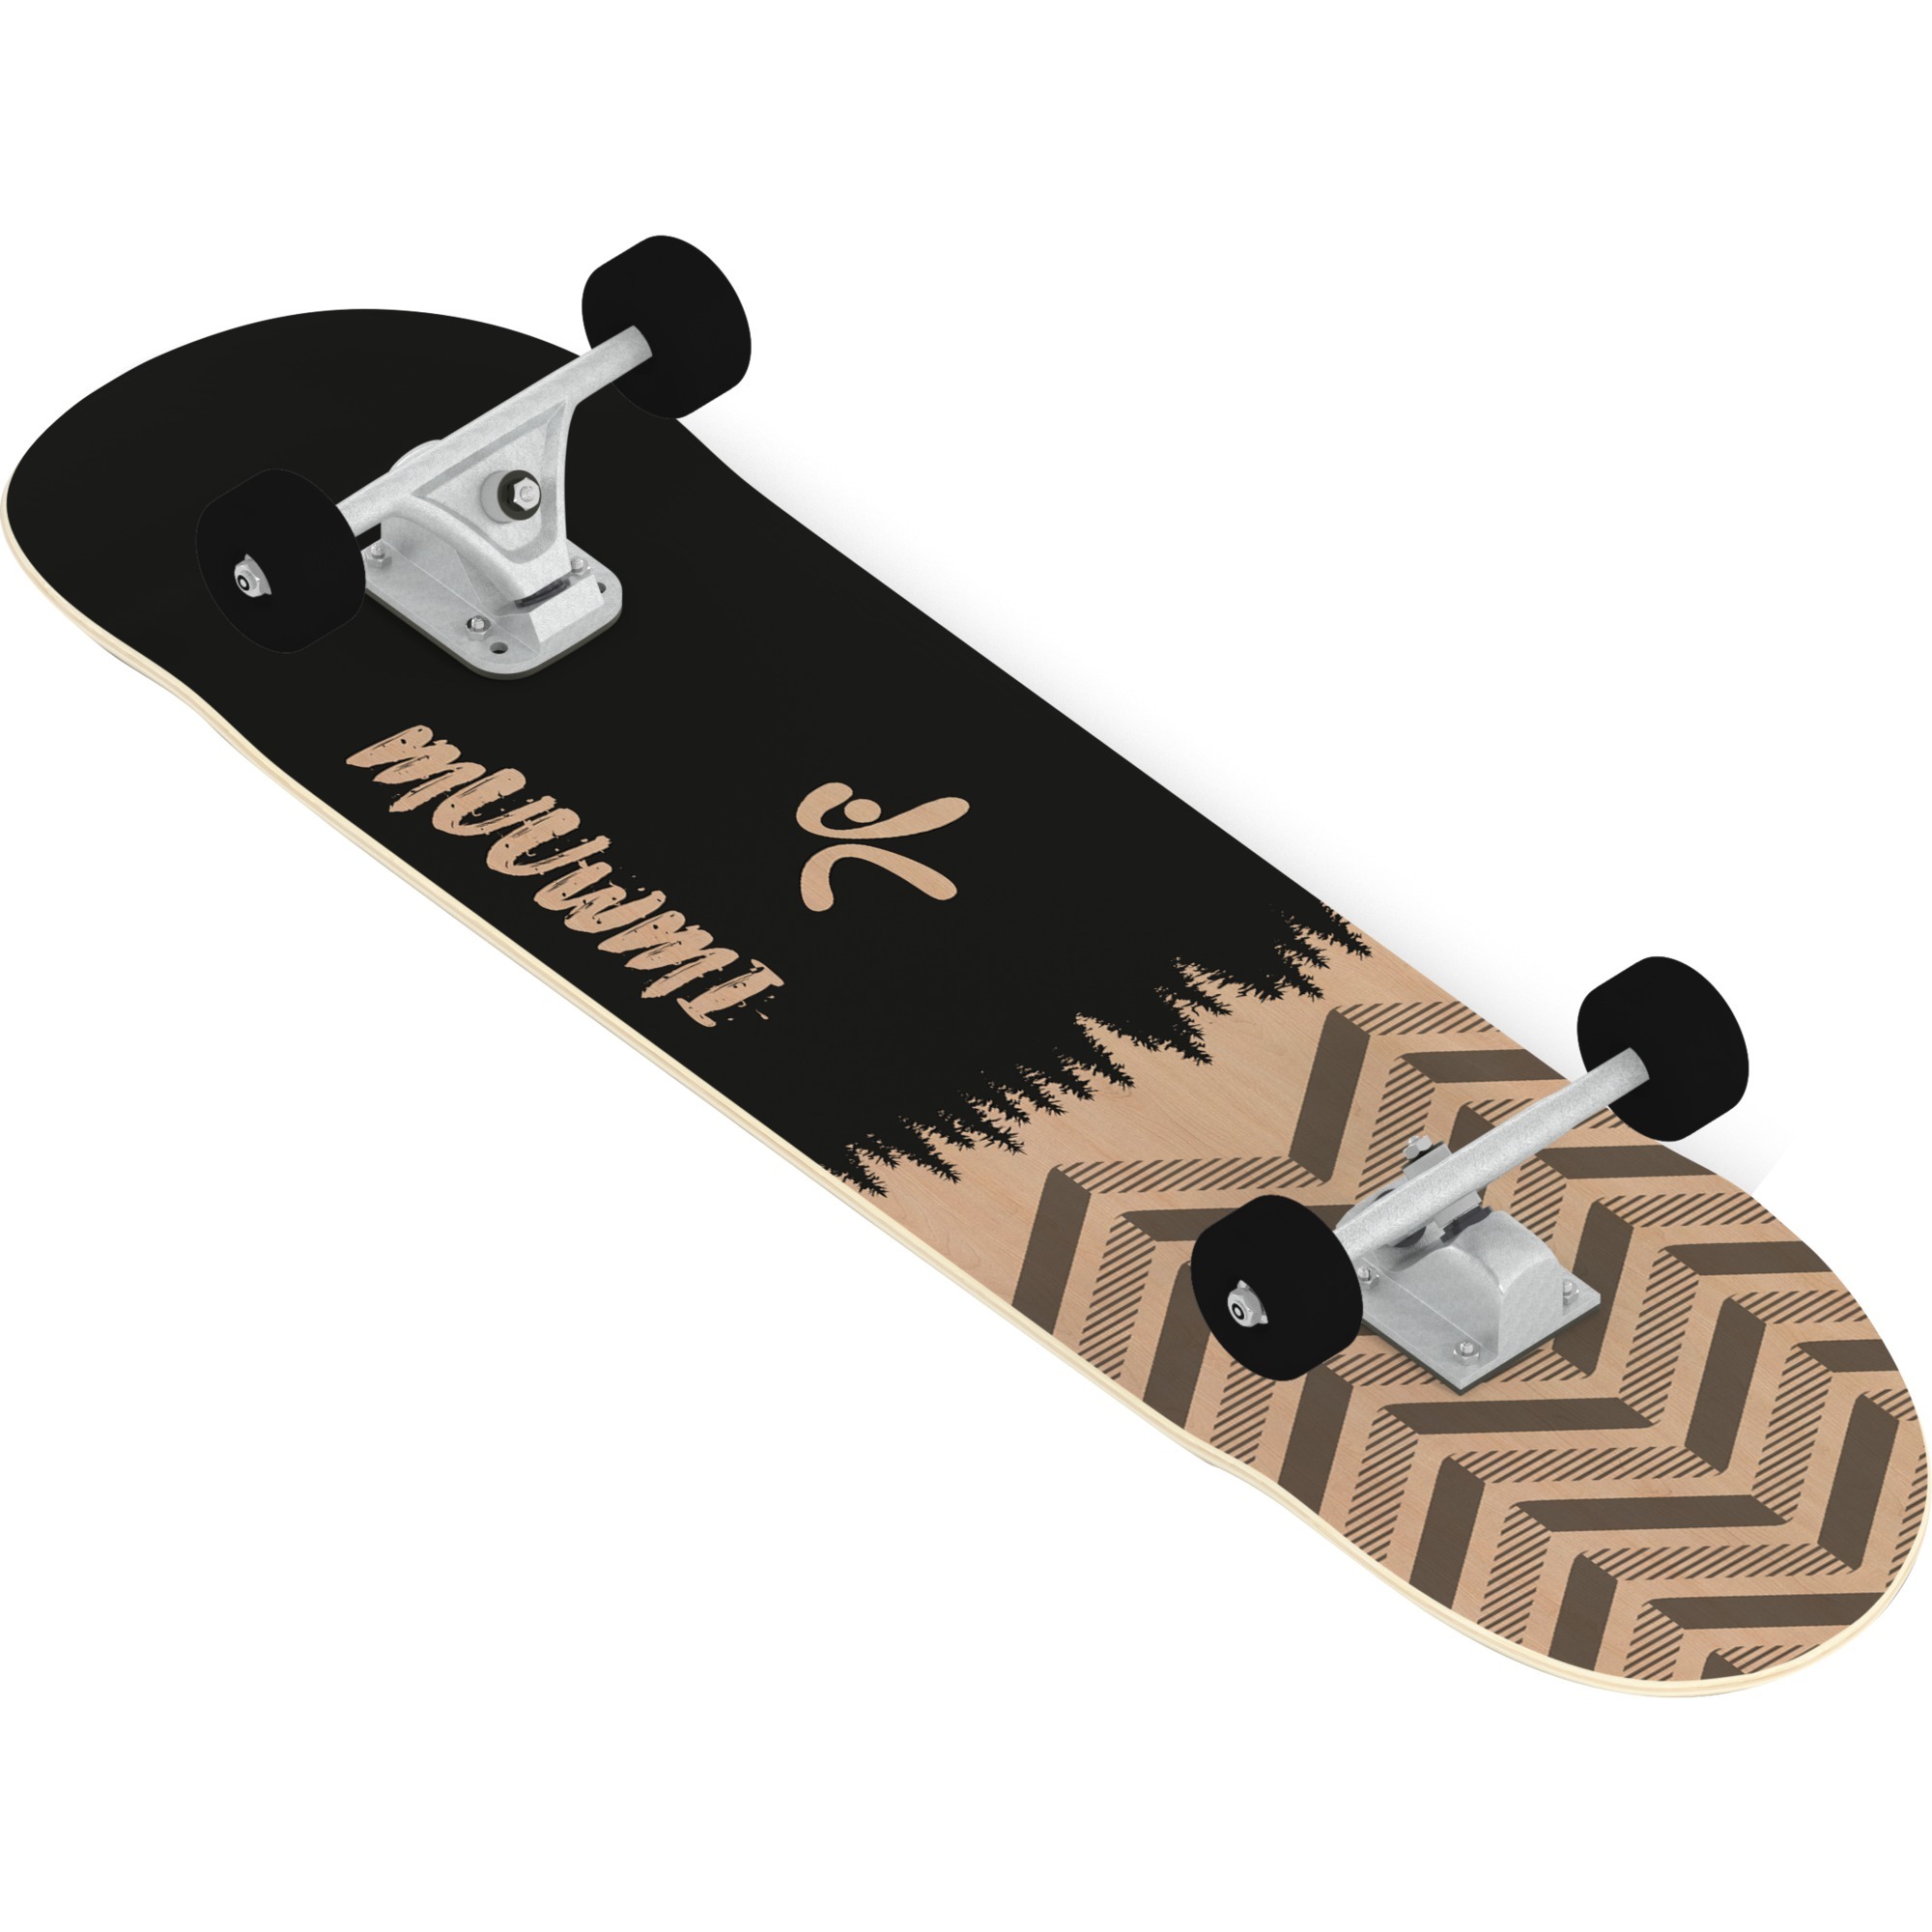 Image of Alternate - Skateboard Abec 7 Forest online einkaufen bei Alternate